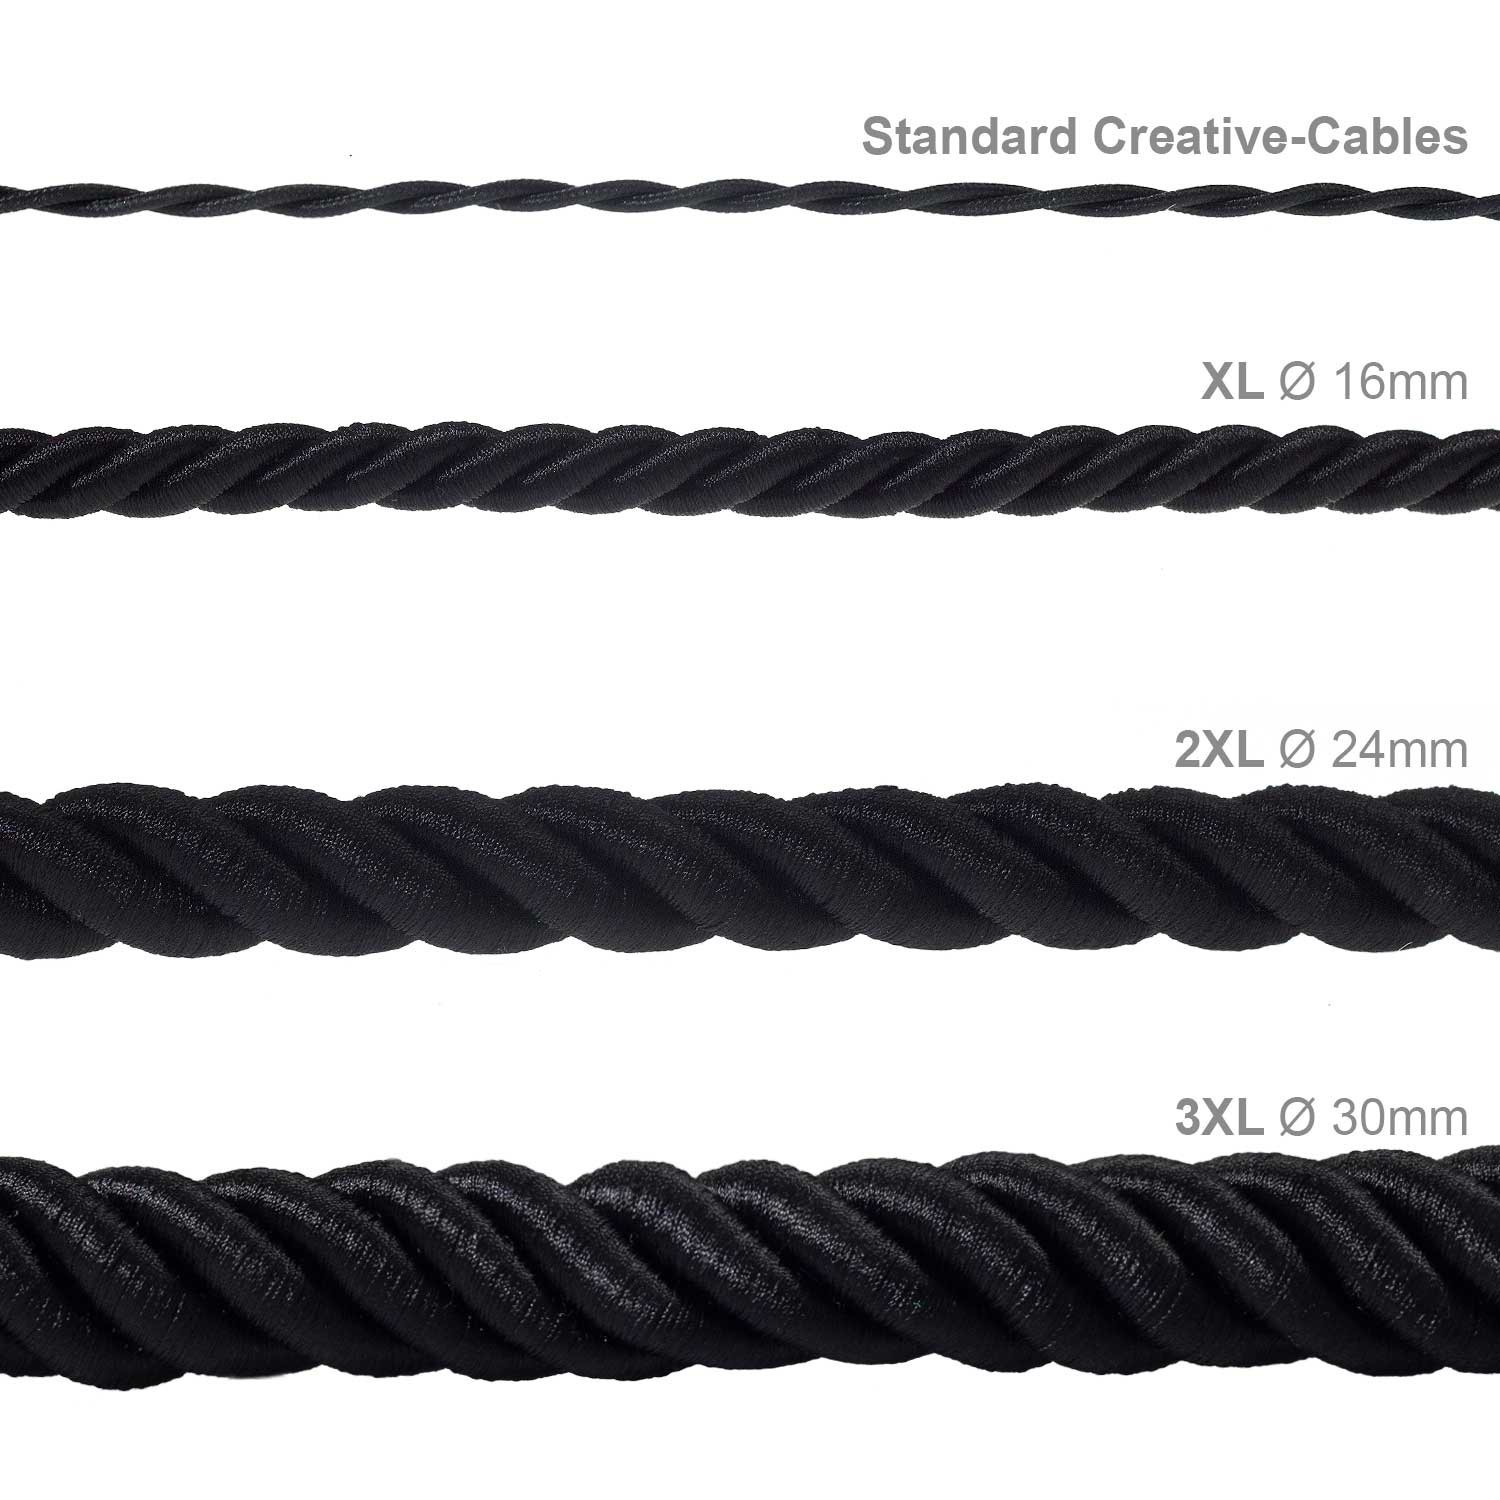 3XL električna vrv, električen kabel 3x0,75, prekrit s črnim svetlečim blagom. Premer 30mm.